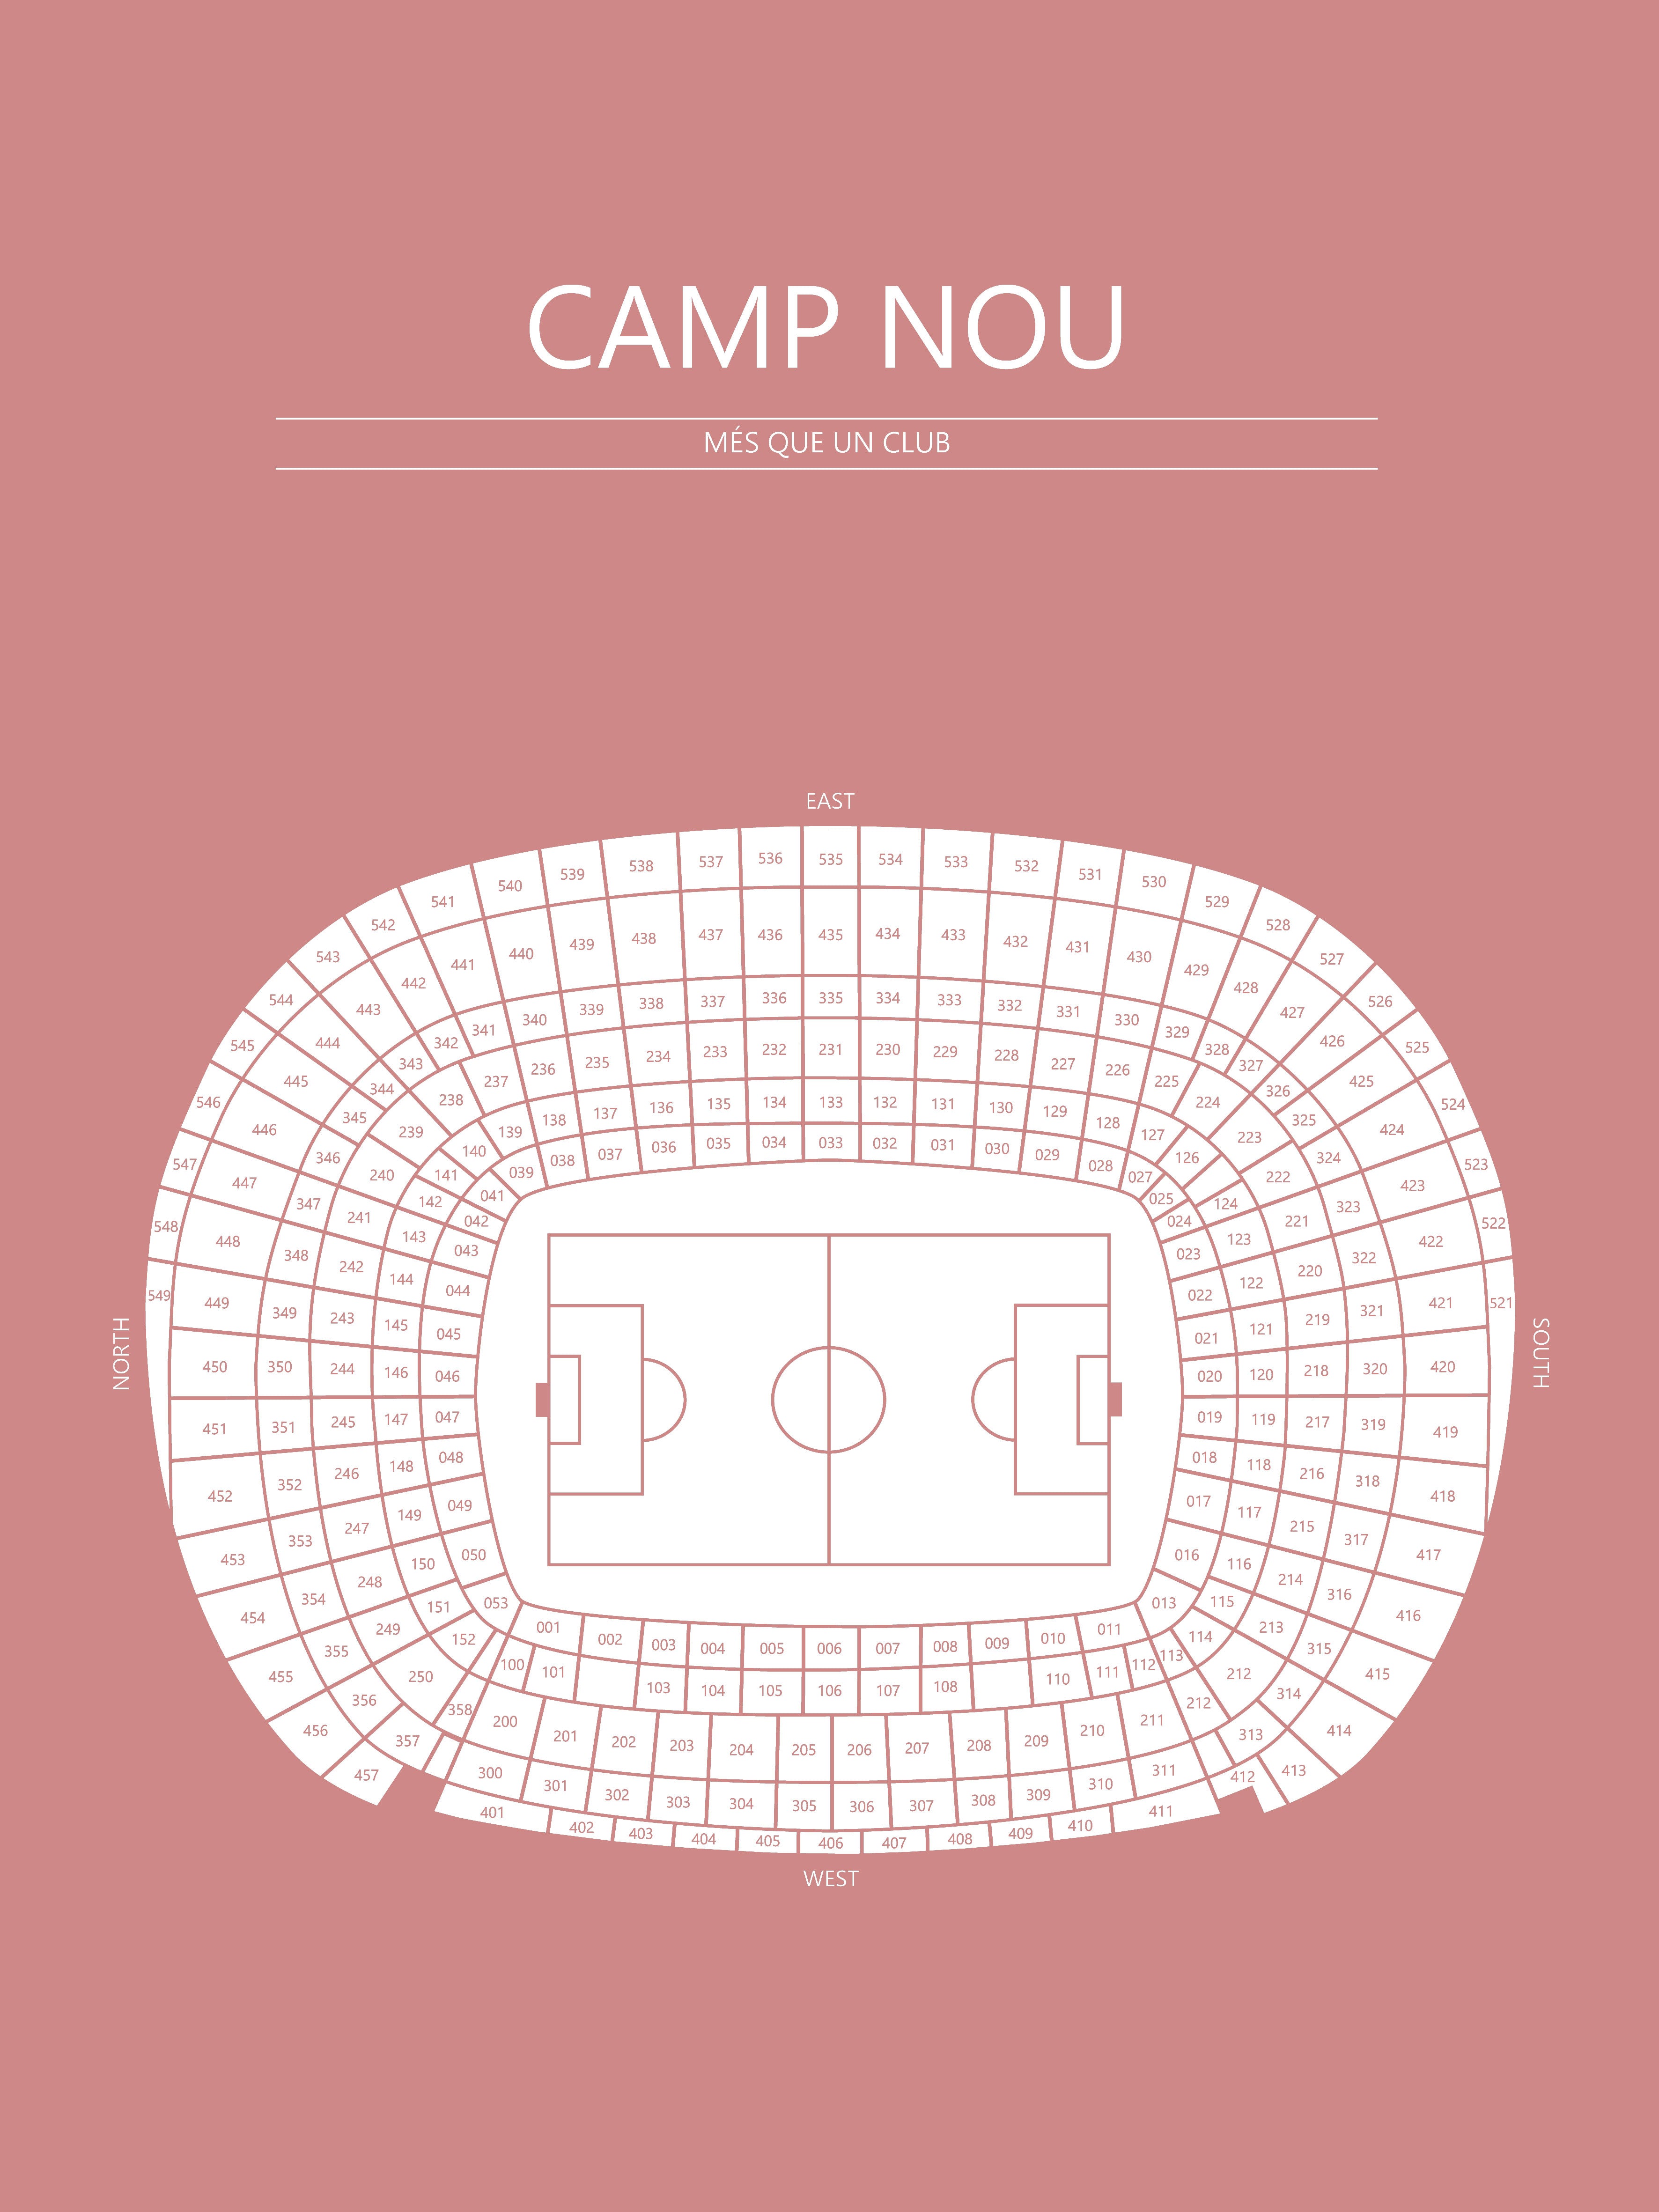 Fodbold plakat FC Barcelona Camp Nou Blush